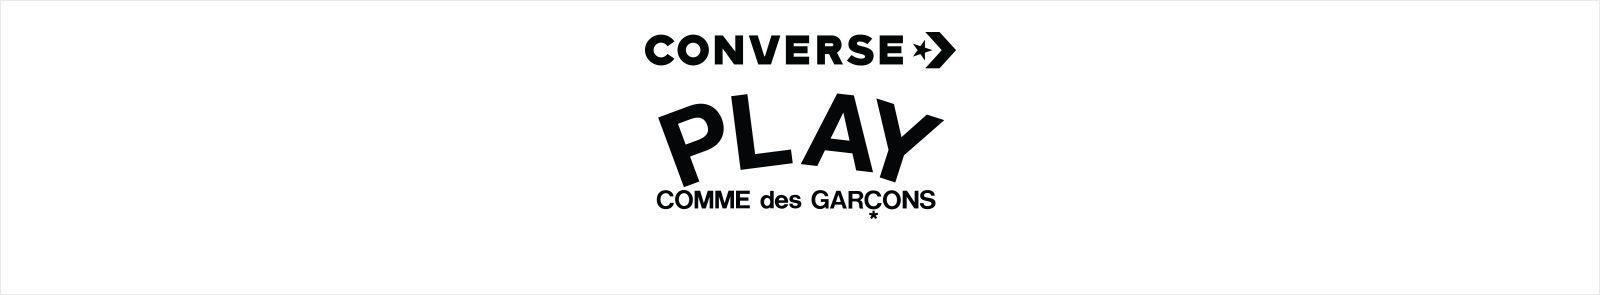 Comme Des Garcons Logo - CDG Converse. COMME des GARÇONS Play. Converse.com